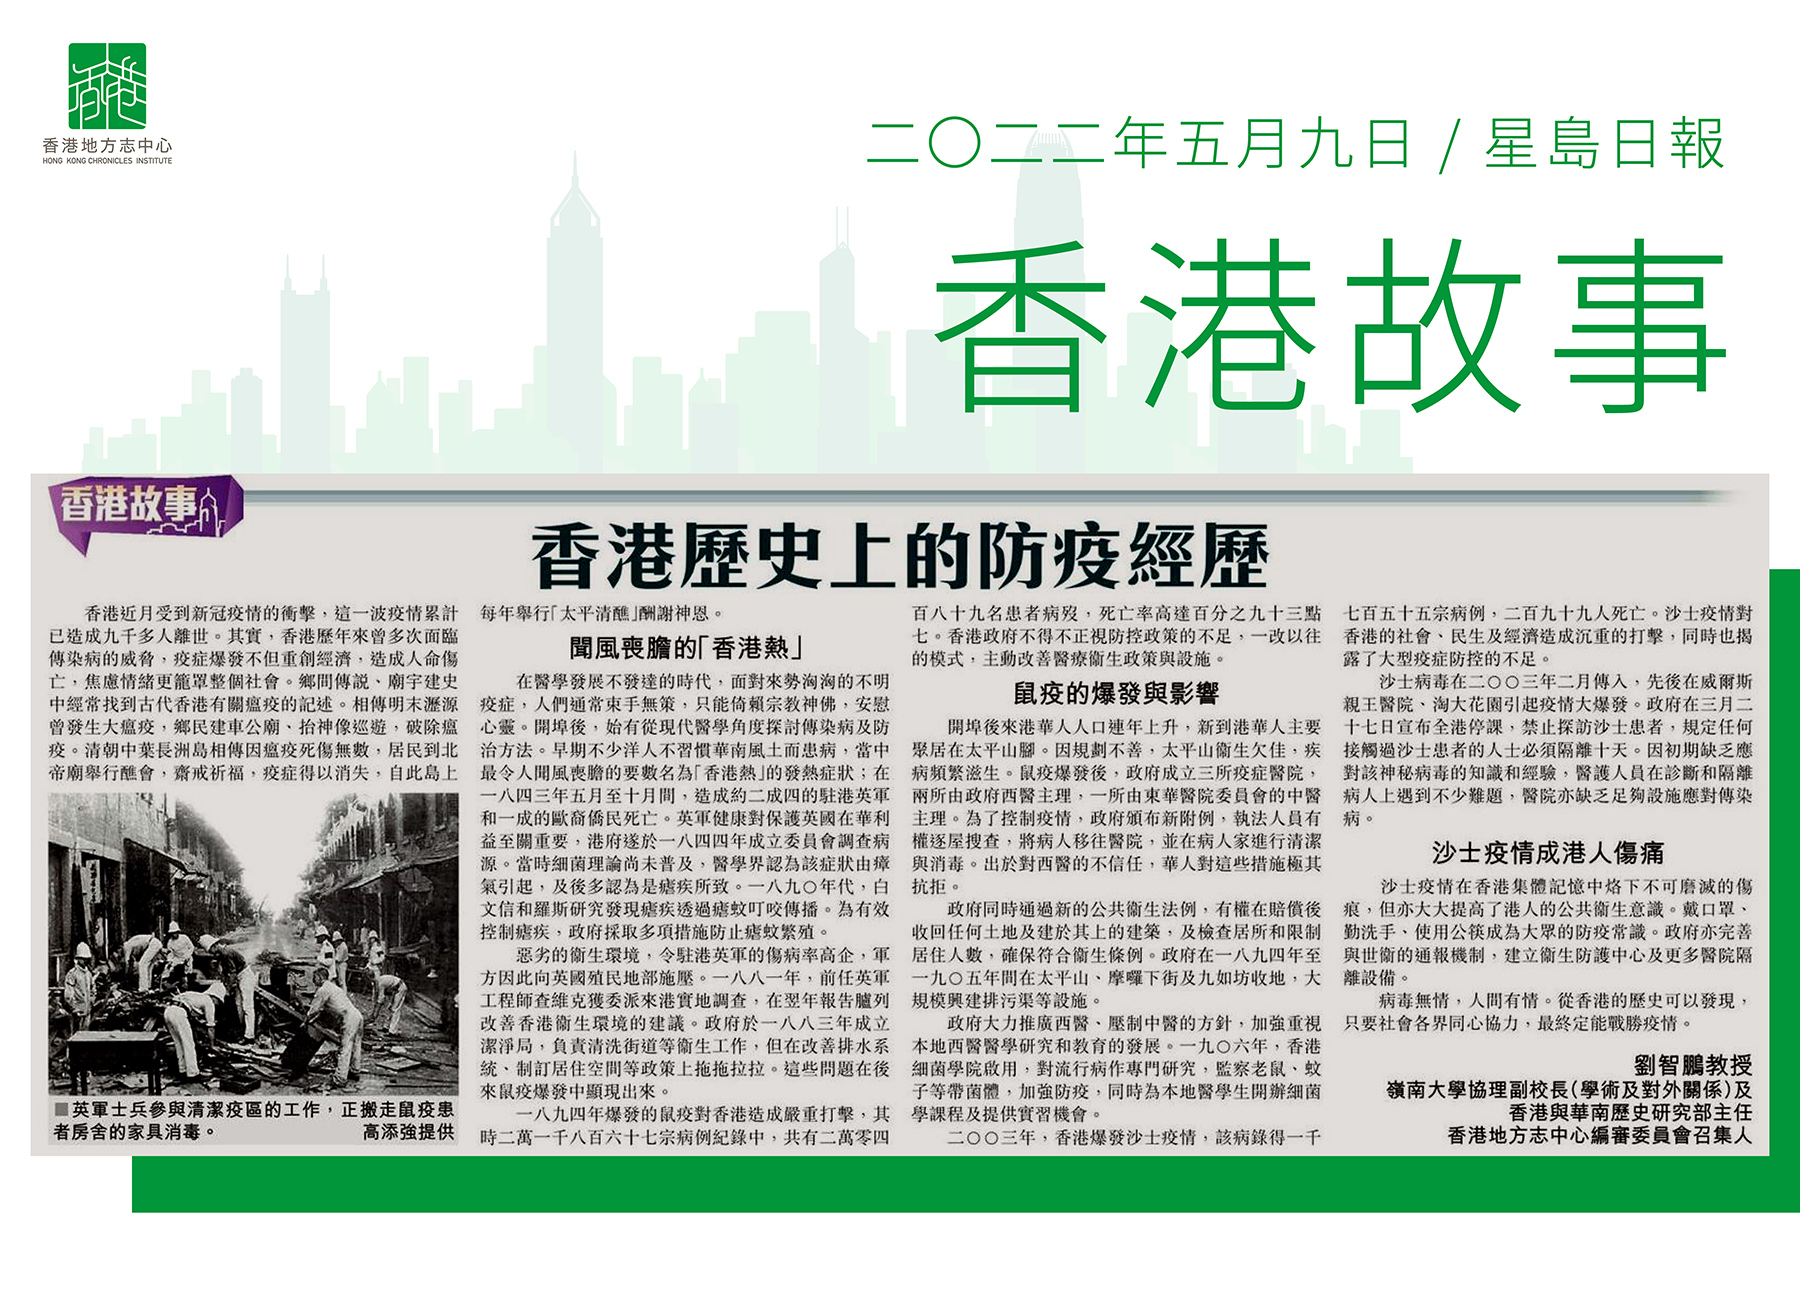 劉智鵬教授:《香港歷史上的防疫經歷》